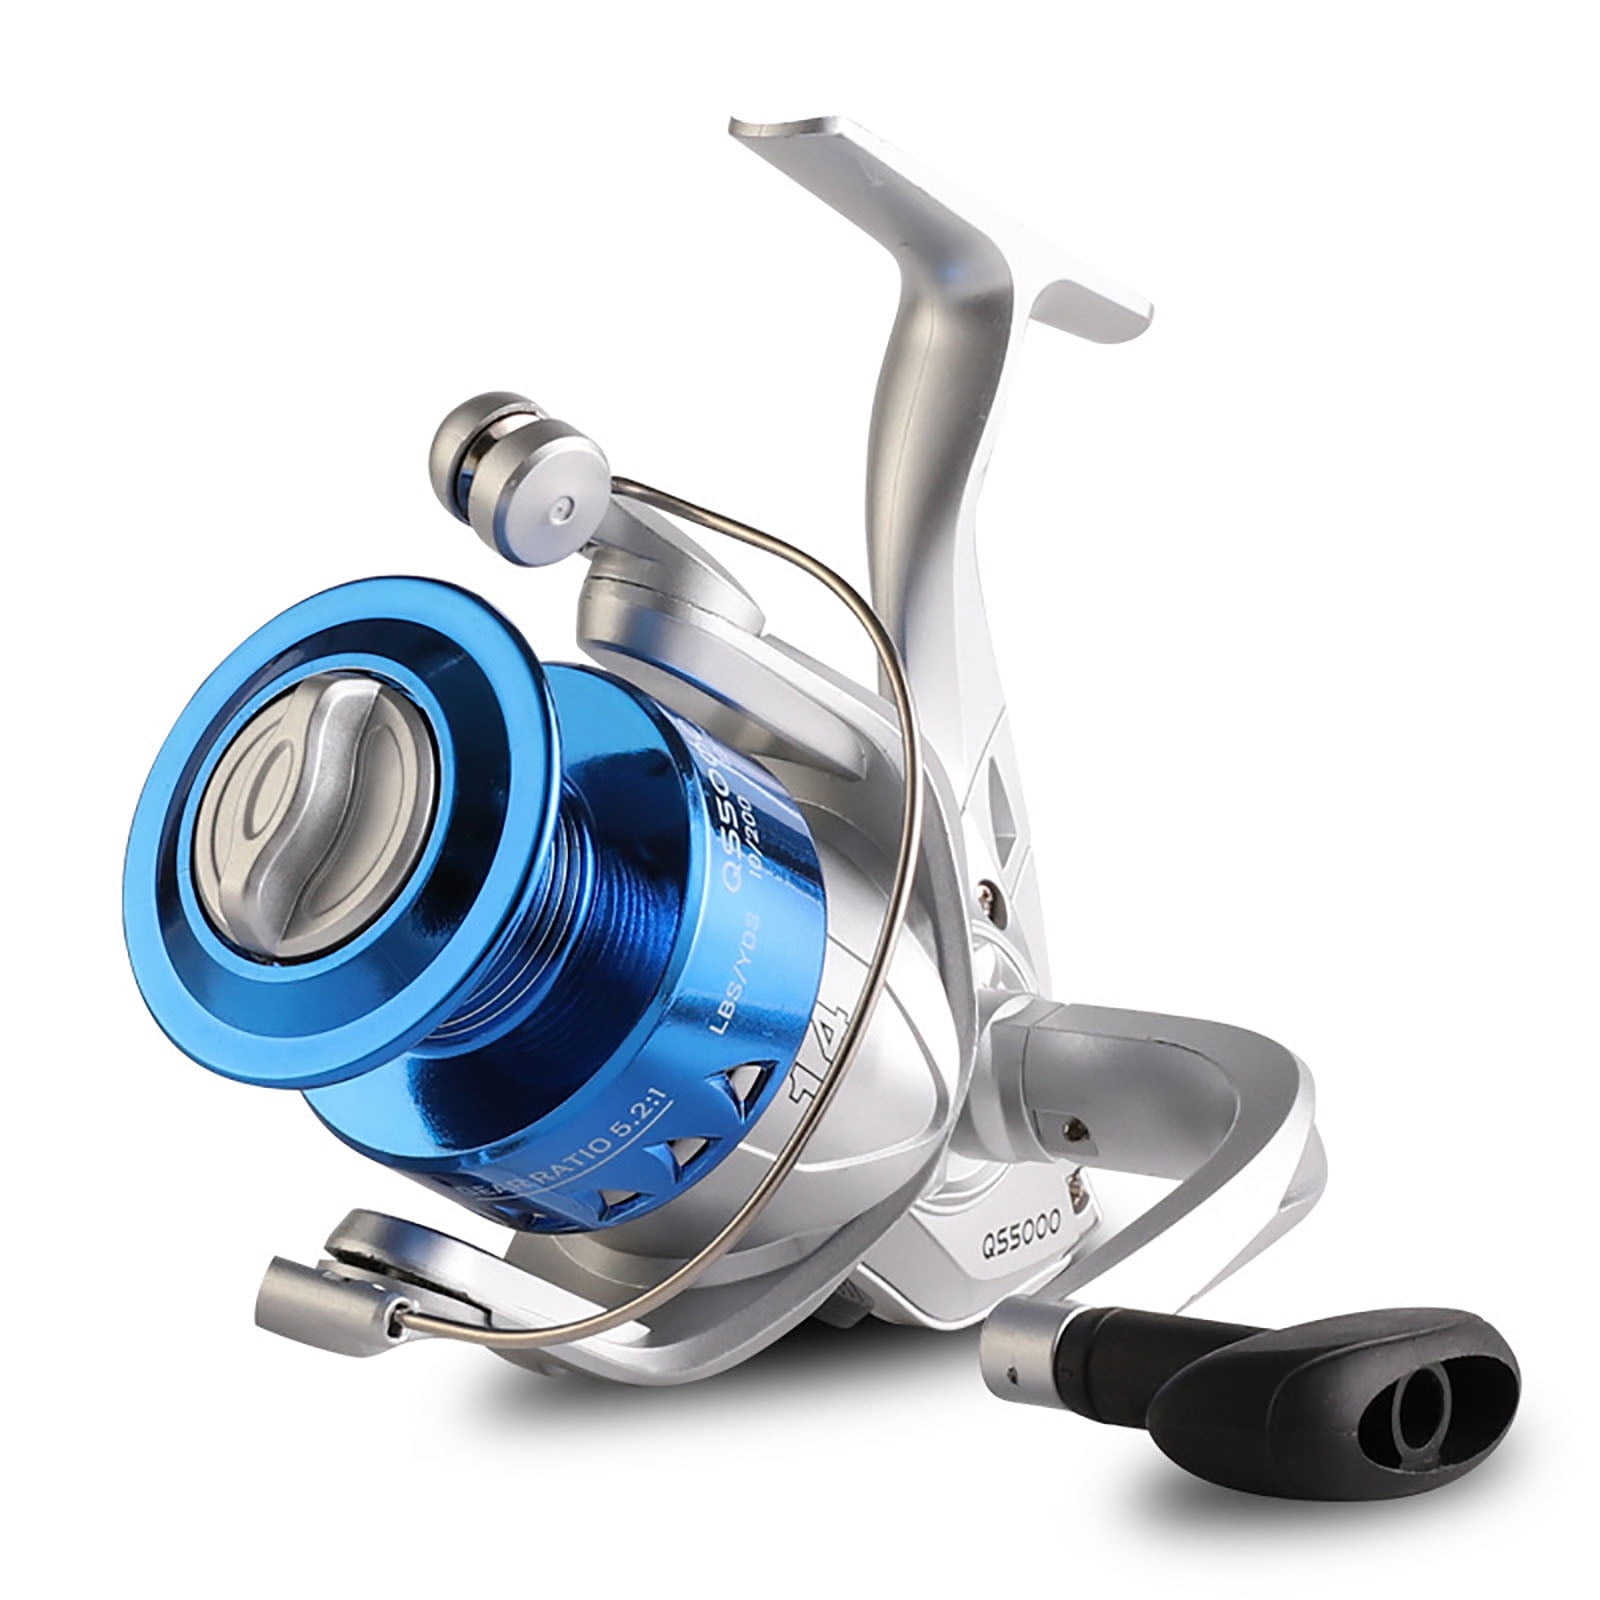 Купить Рыбная ловля  Sougayilang DK1000-DK6000 Spinning Fishing Reel 11 BB  Cost-effective Reel 12KG Max Drag Power Fishing Reel Fishing Tackle Gear